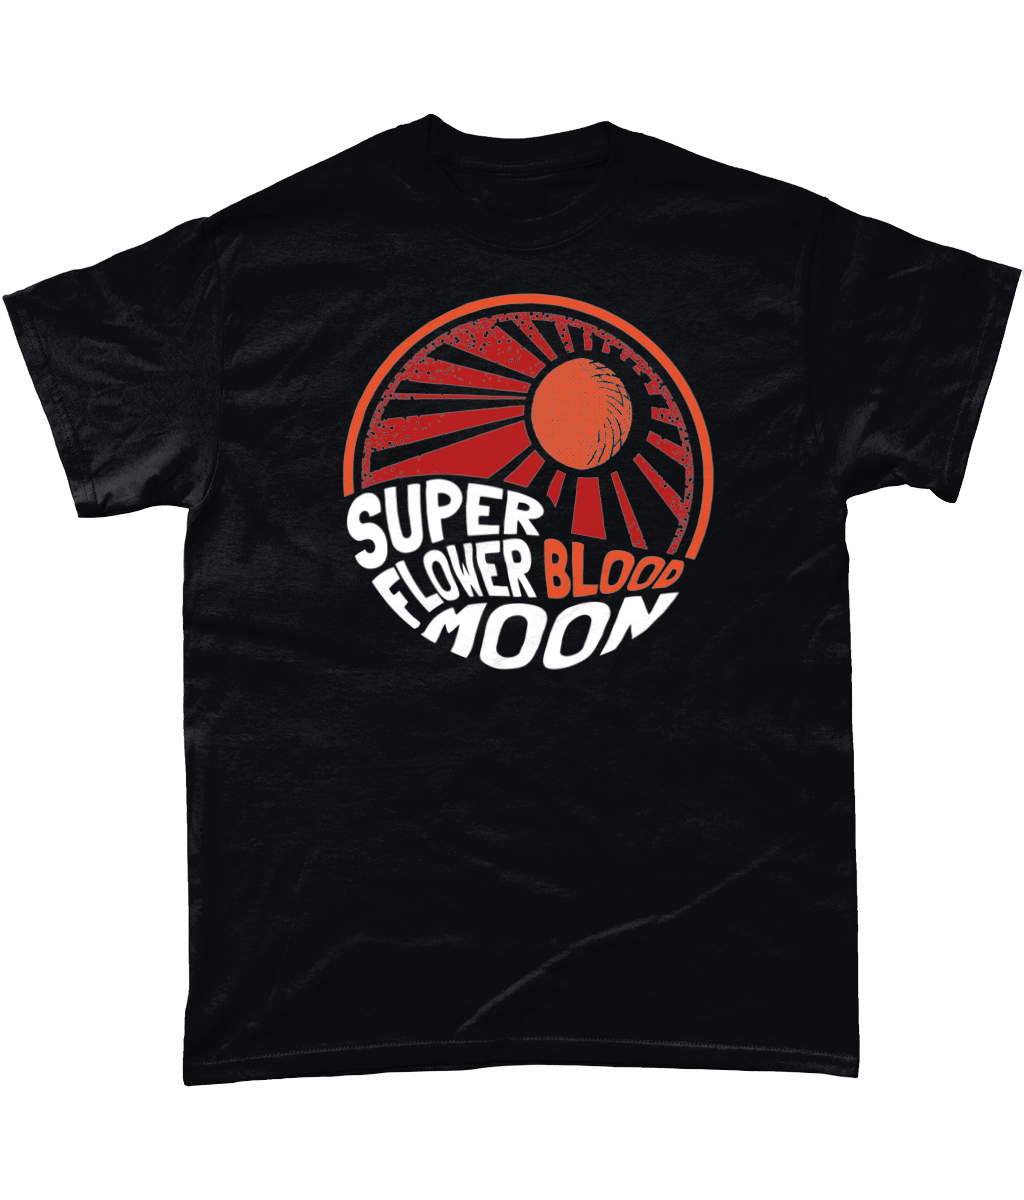 Super flower Blood Moon T-Shirt